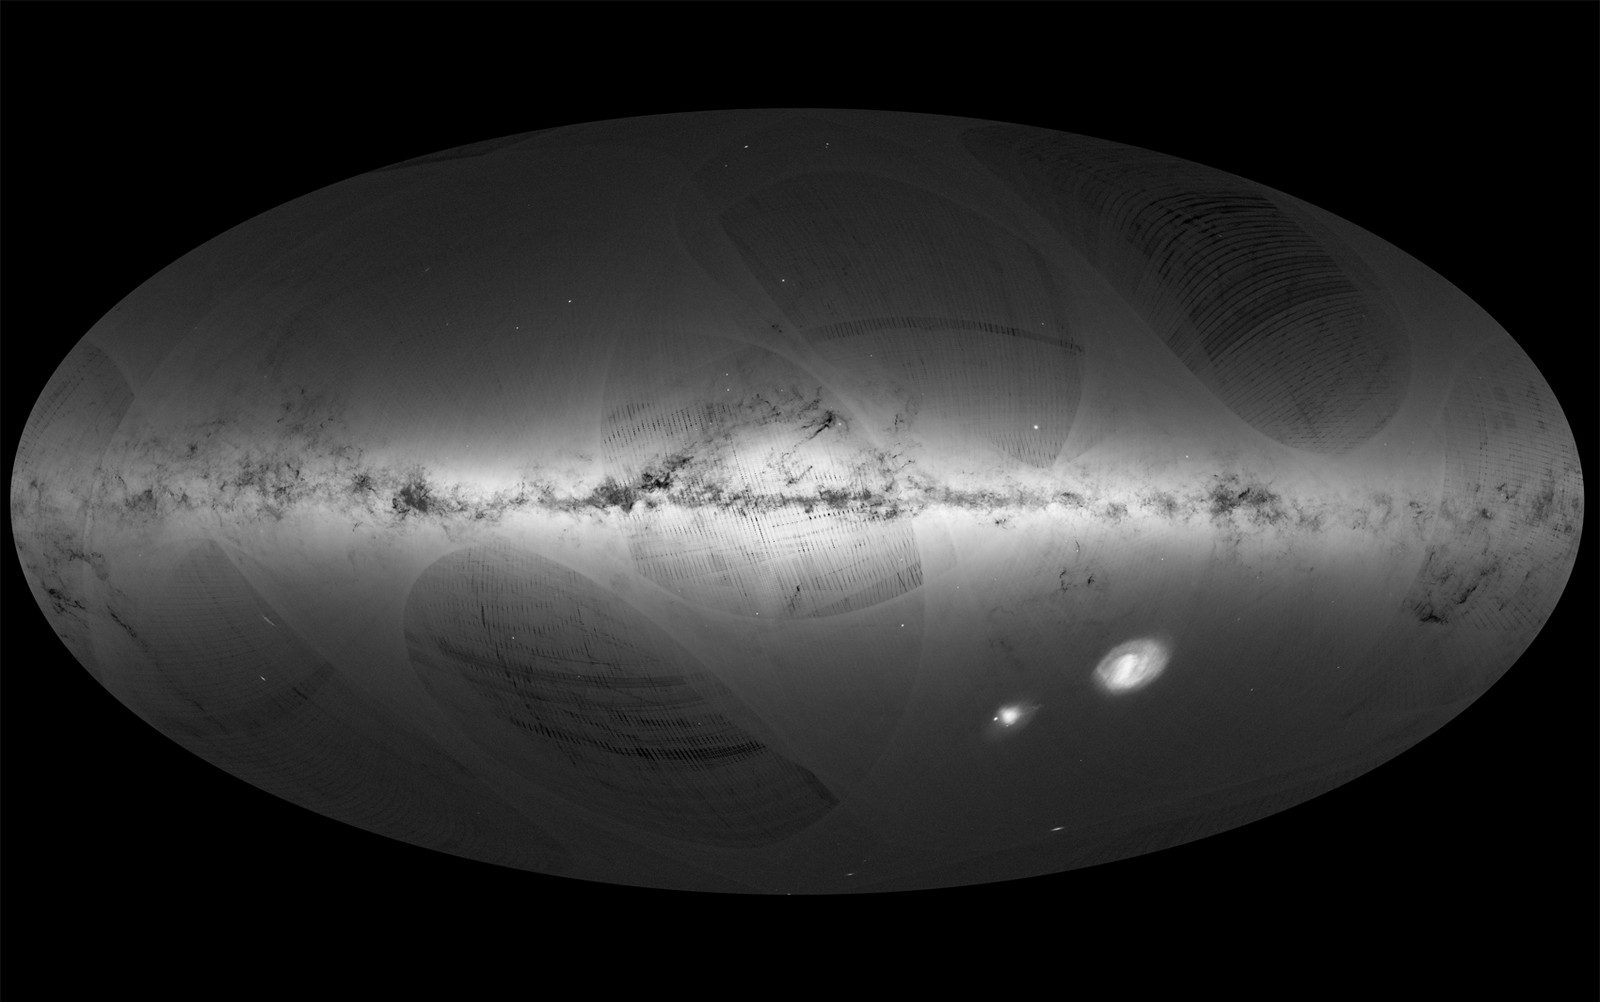 Mapa de nossa galáxia, a Via Láctea, e galáxias vizinhas, baseado em informações coletadas pelo satélite Gaia. Regiões mais brilhantes indicam concentrações mais densas de estrelas e regiões mais escuras correspondem a locais no céu onde poucas estrelas são observadas. Os dois objetos brilhantes na direita inferior da imagem são a Grande Nuvem de Magalhães e a Pequena Nuvem de Magalhães, duas galáxias anãs que orbitam a Via Láctea. (Foto: ESA/Gaia/DPAC)